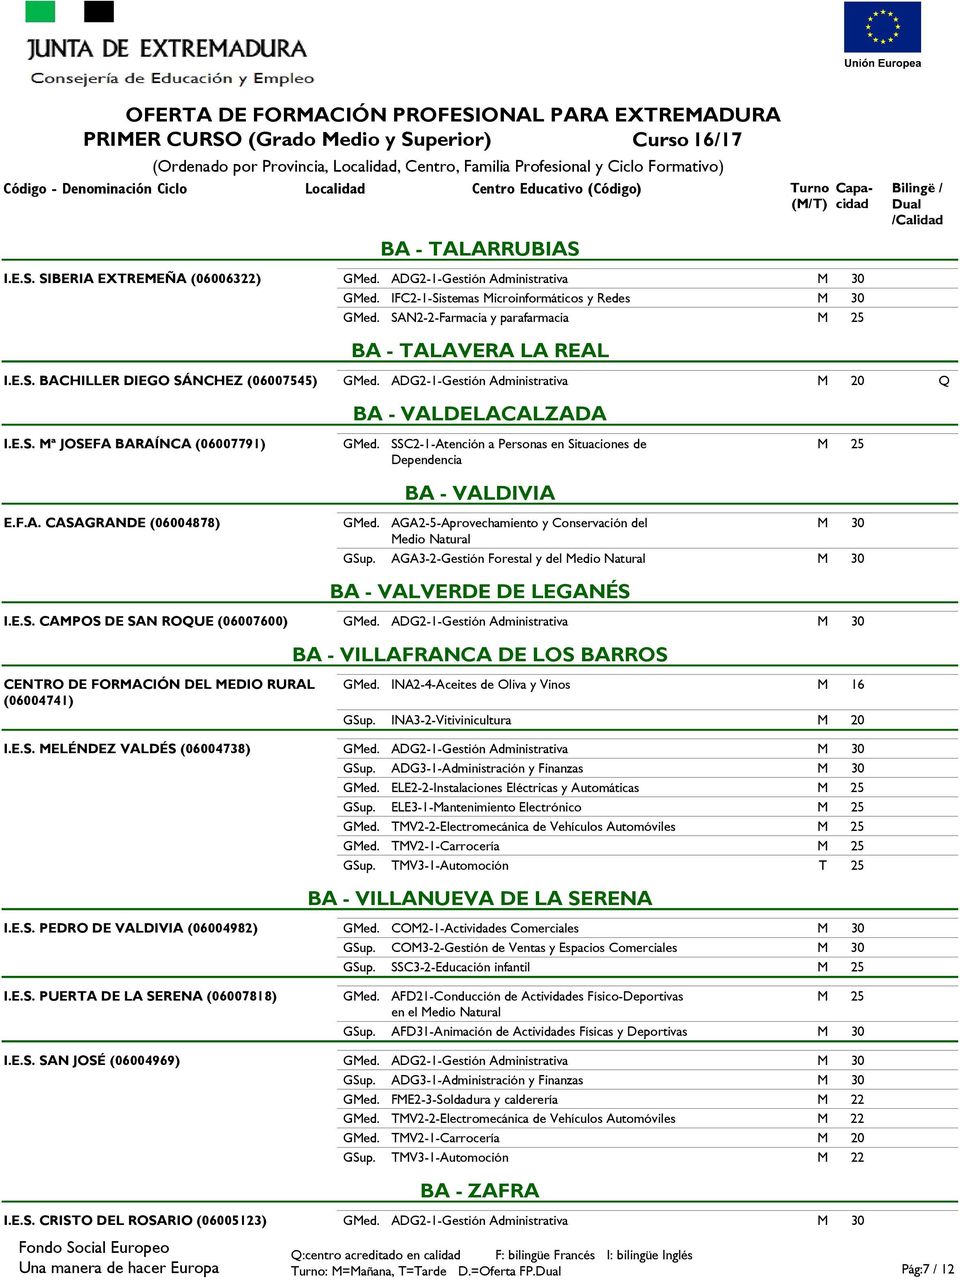 AGA2-5-Aprovechamiento y Conservación del Medio Natural AGA3-2-Gestión Forestal y del Medio Natural BA - VALVERDE DE LEGANÉS BA - VILLAFRANCA DE LOS BARROS INA2-4-Aceites de Oliva y Vinos M 16